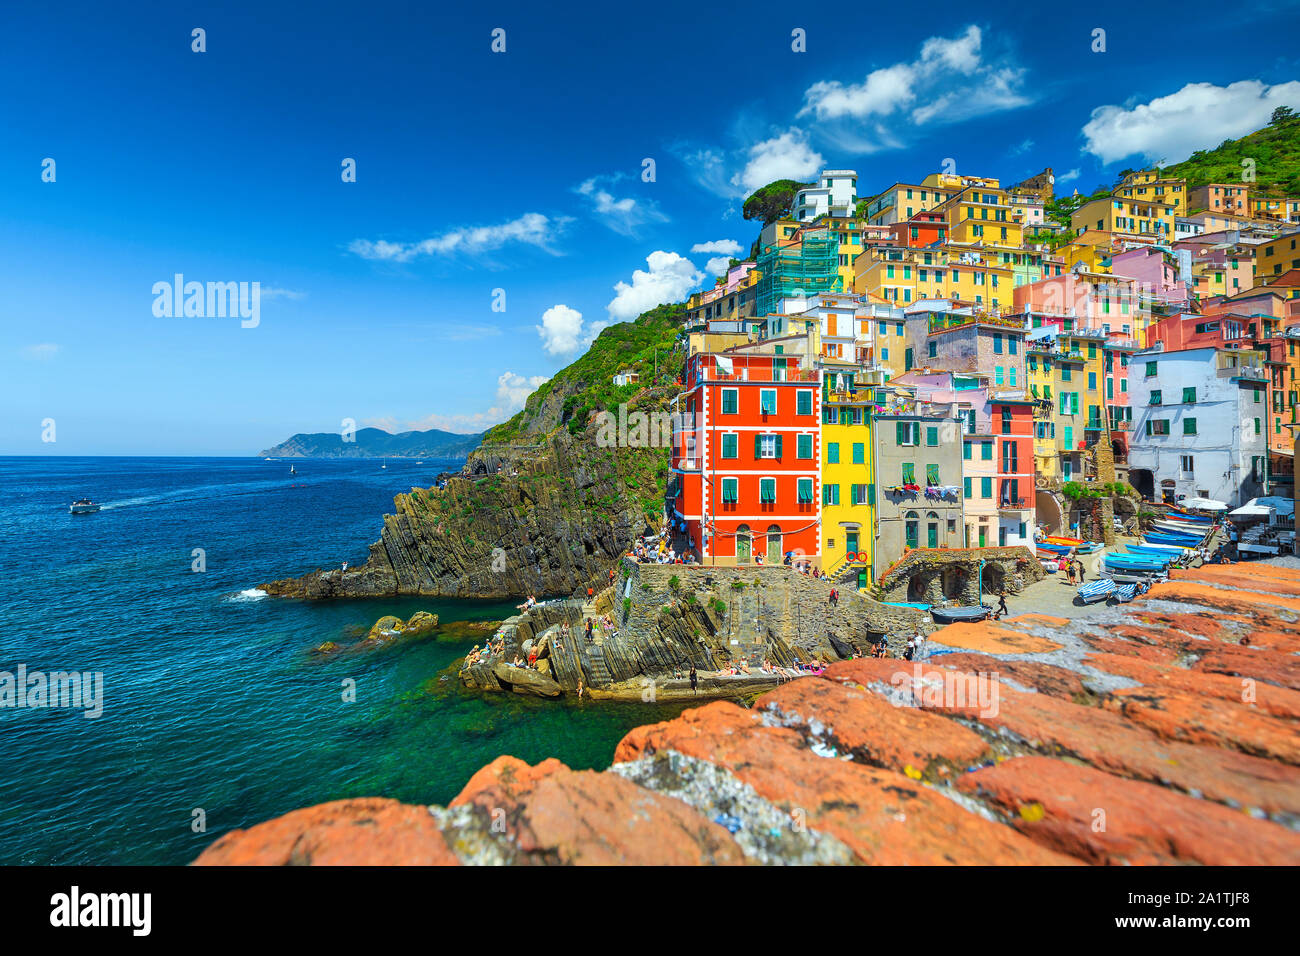 Voyage pittoresque et la photographie. Village touristique populaire avec des maisons colorées sur les falaises, Riomaggiore, Cinque Terre, Ligurie, Italie, Banque D'Images